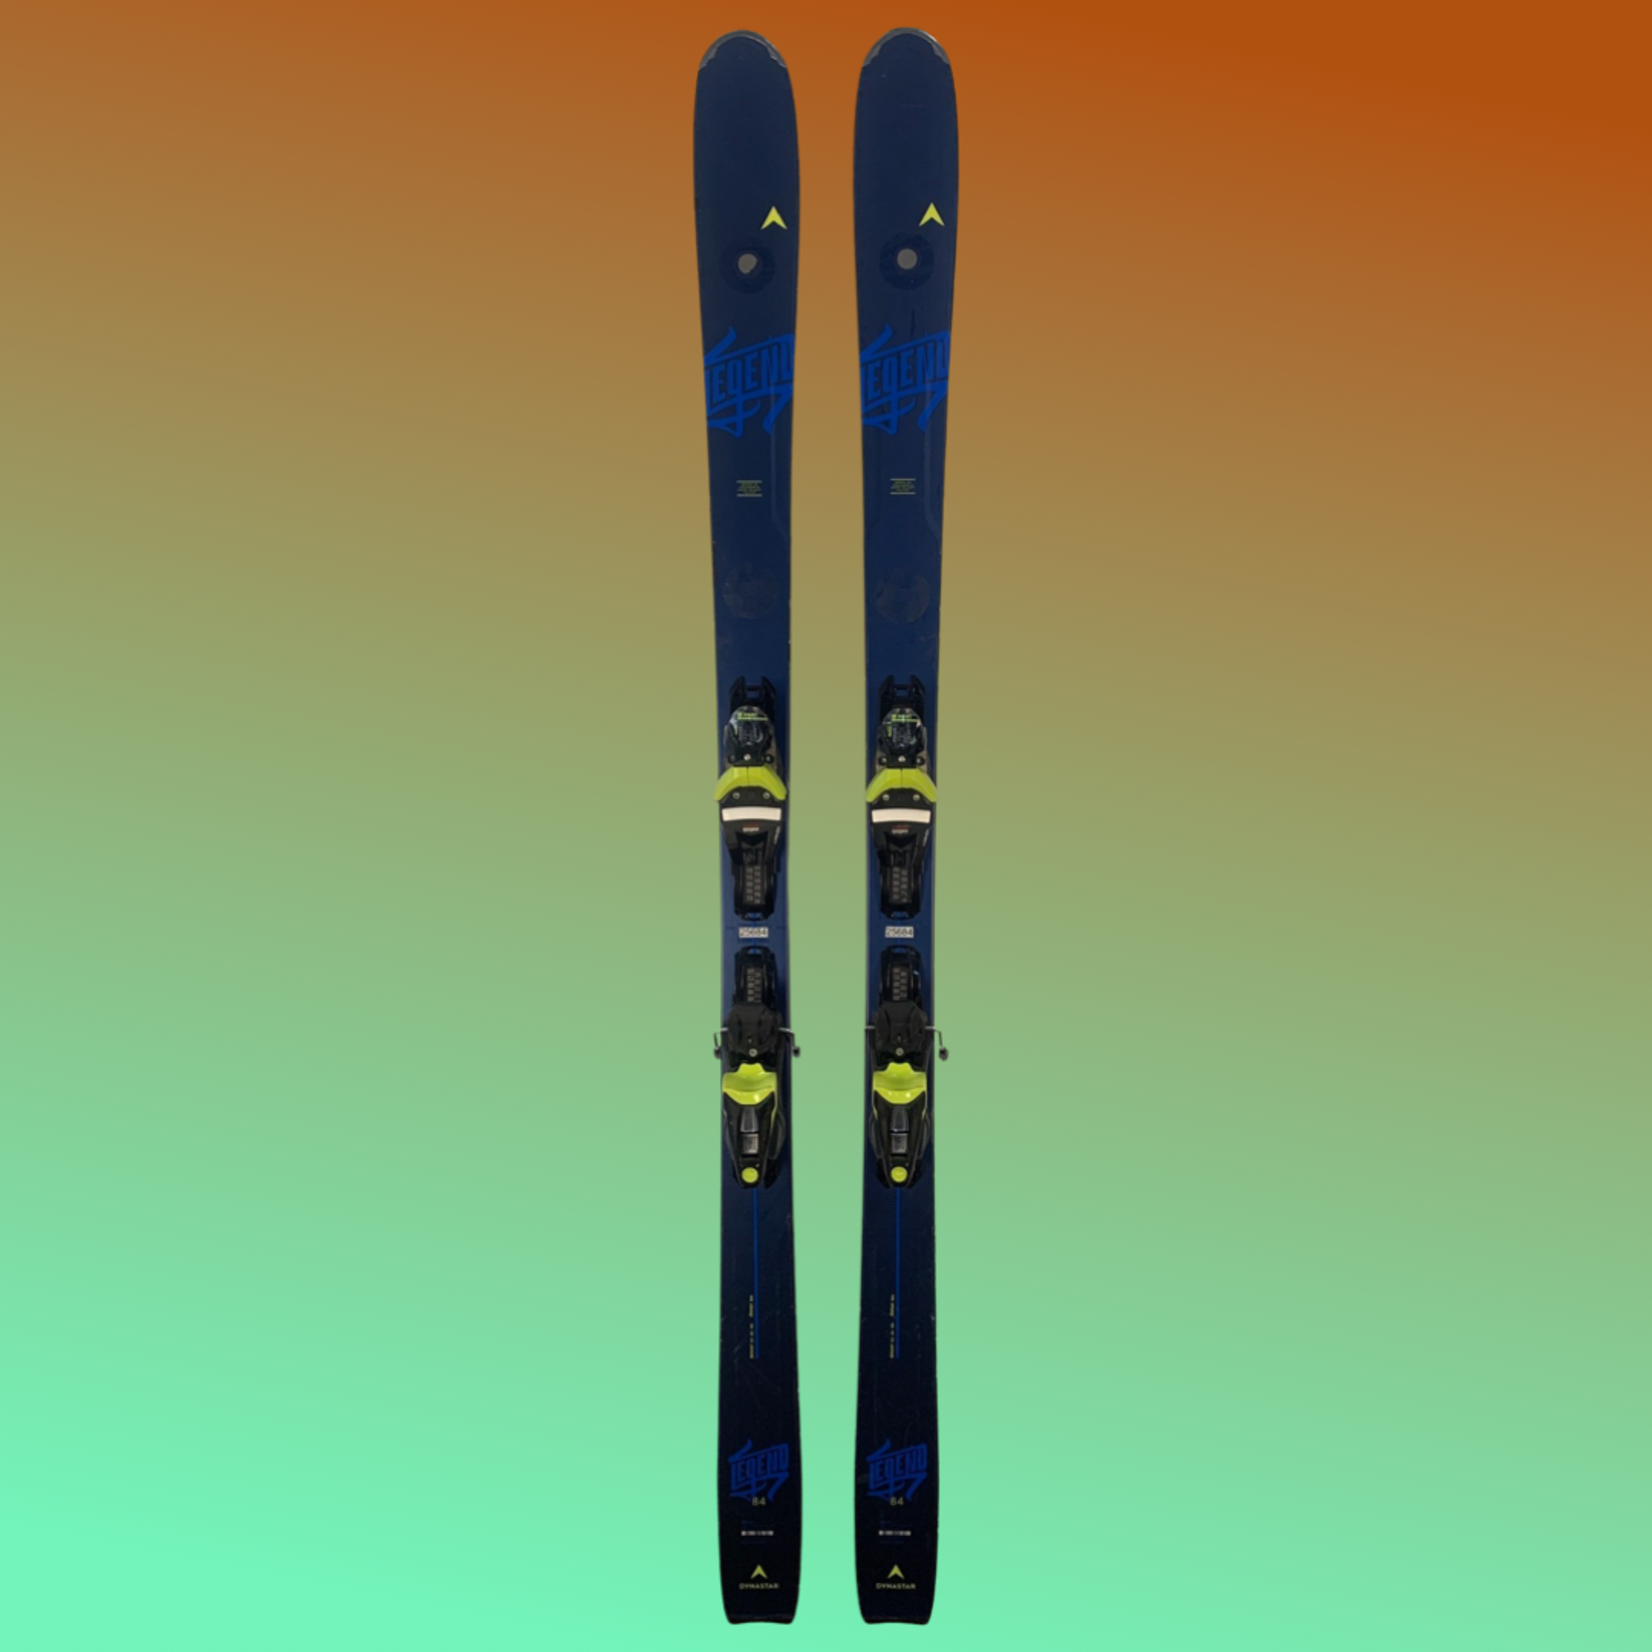 Dynastar Dynastar Legend X84 Skis, Size 184cm